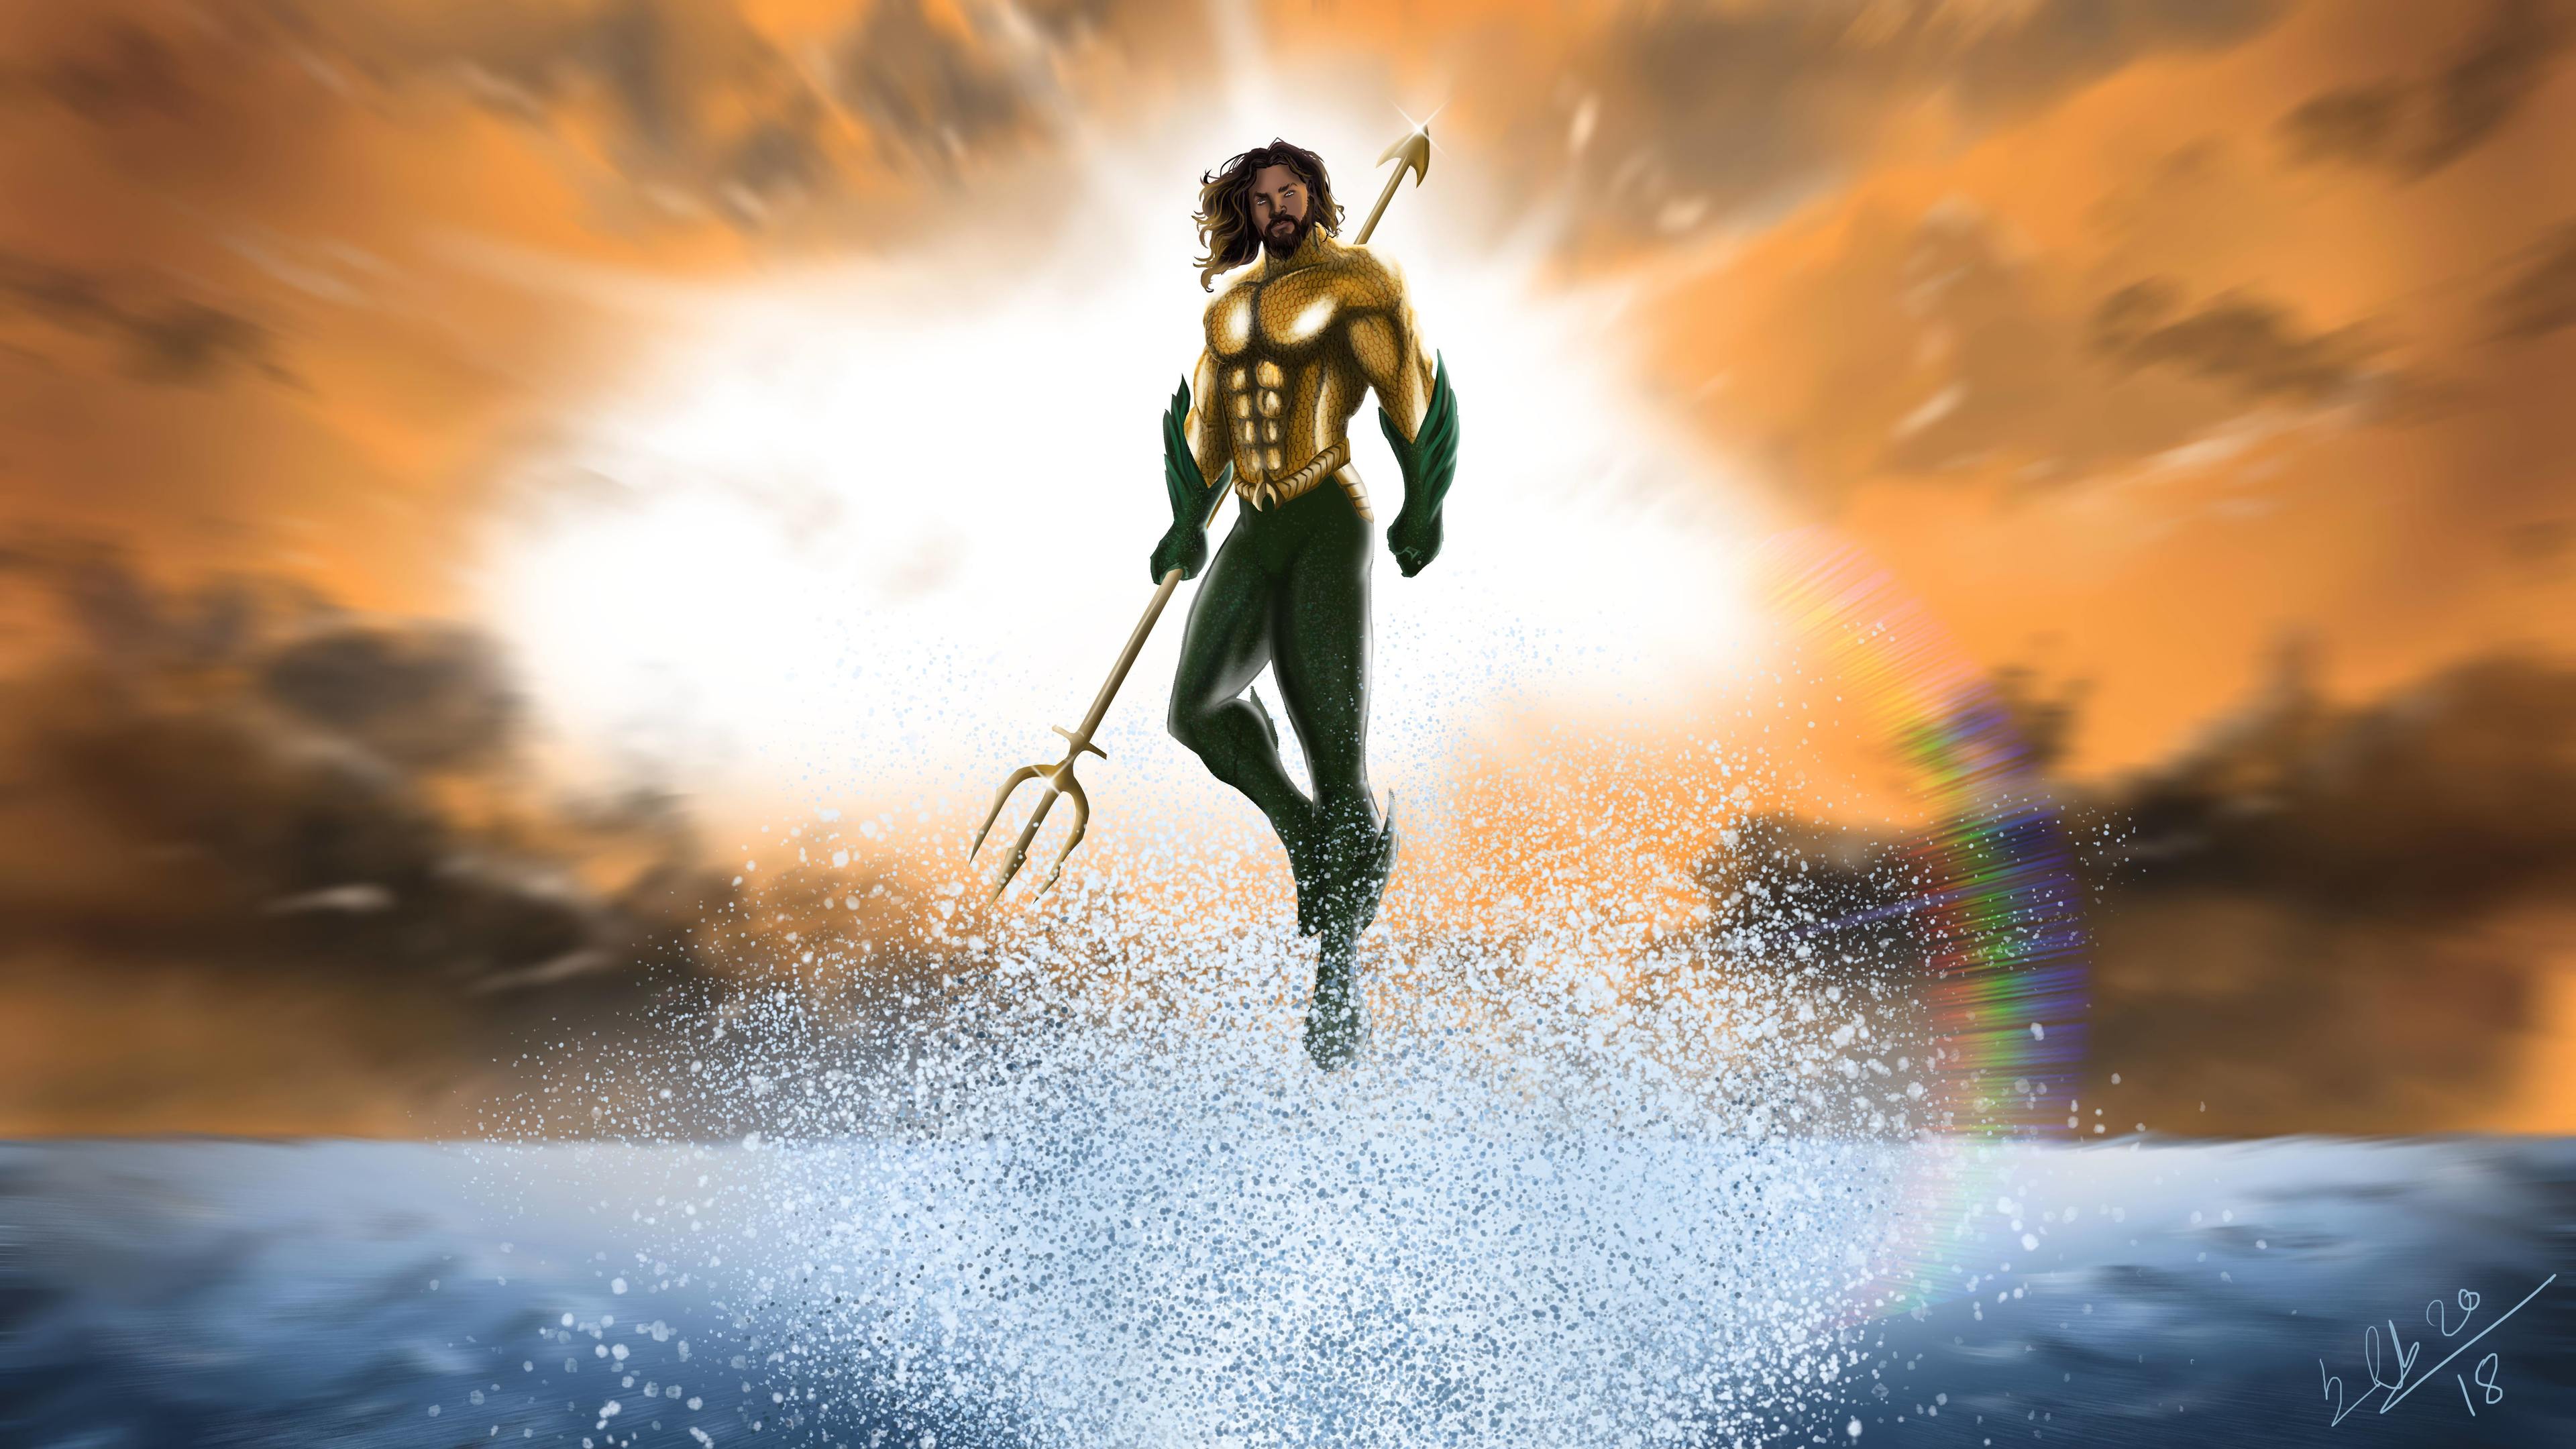 Aquaman 4k hd-wallpapers, digital art wallpapers, artwork ...